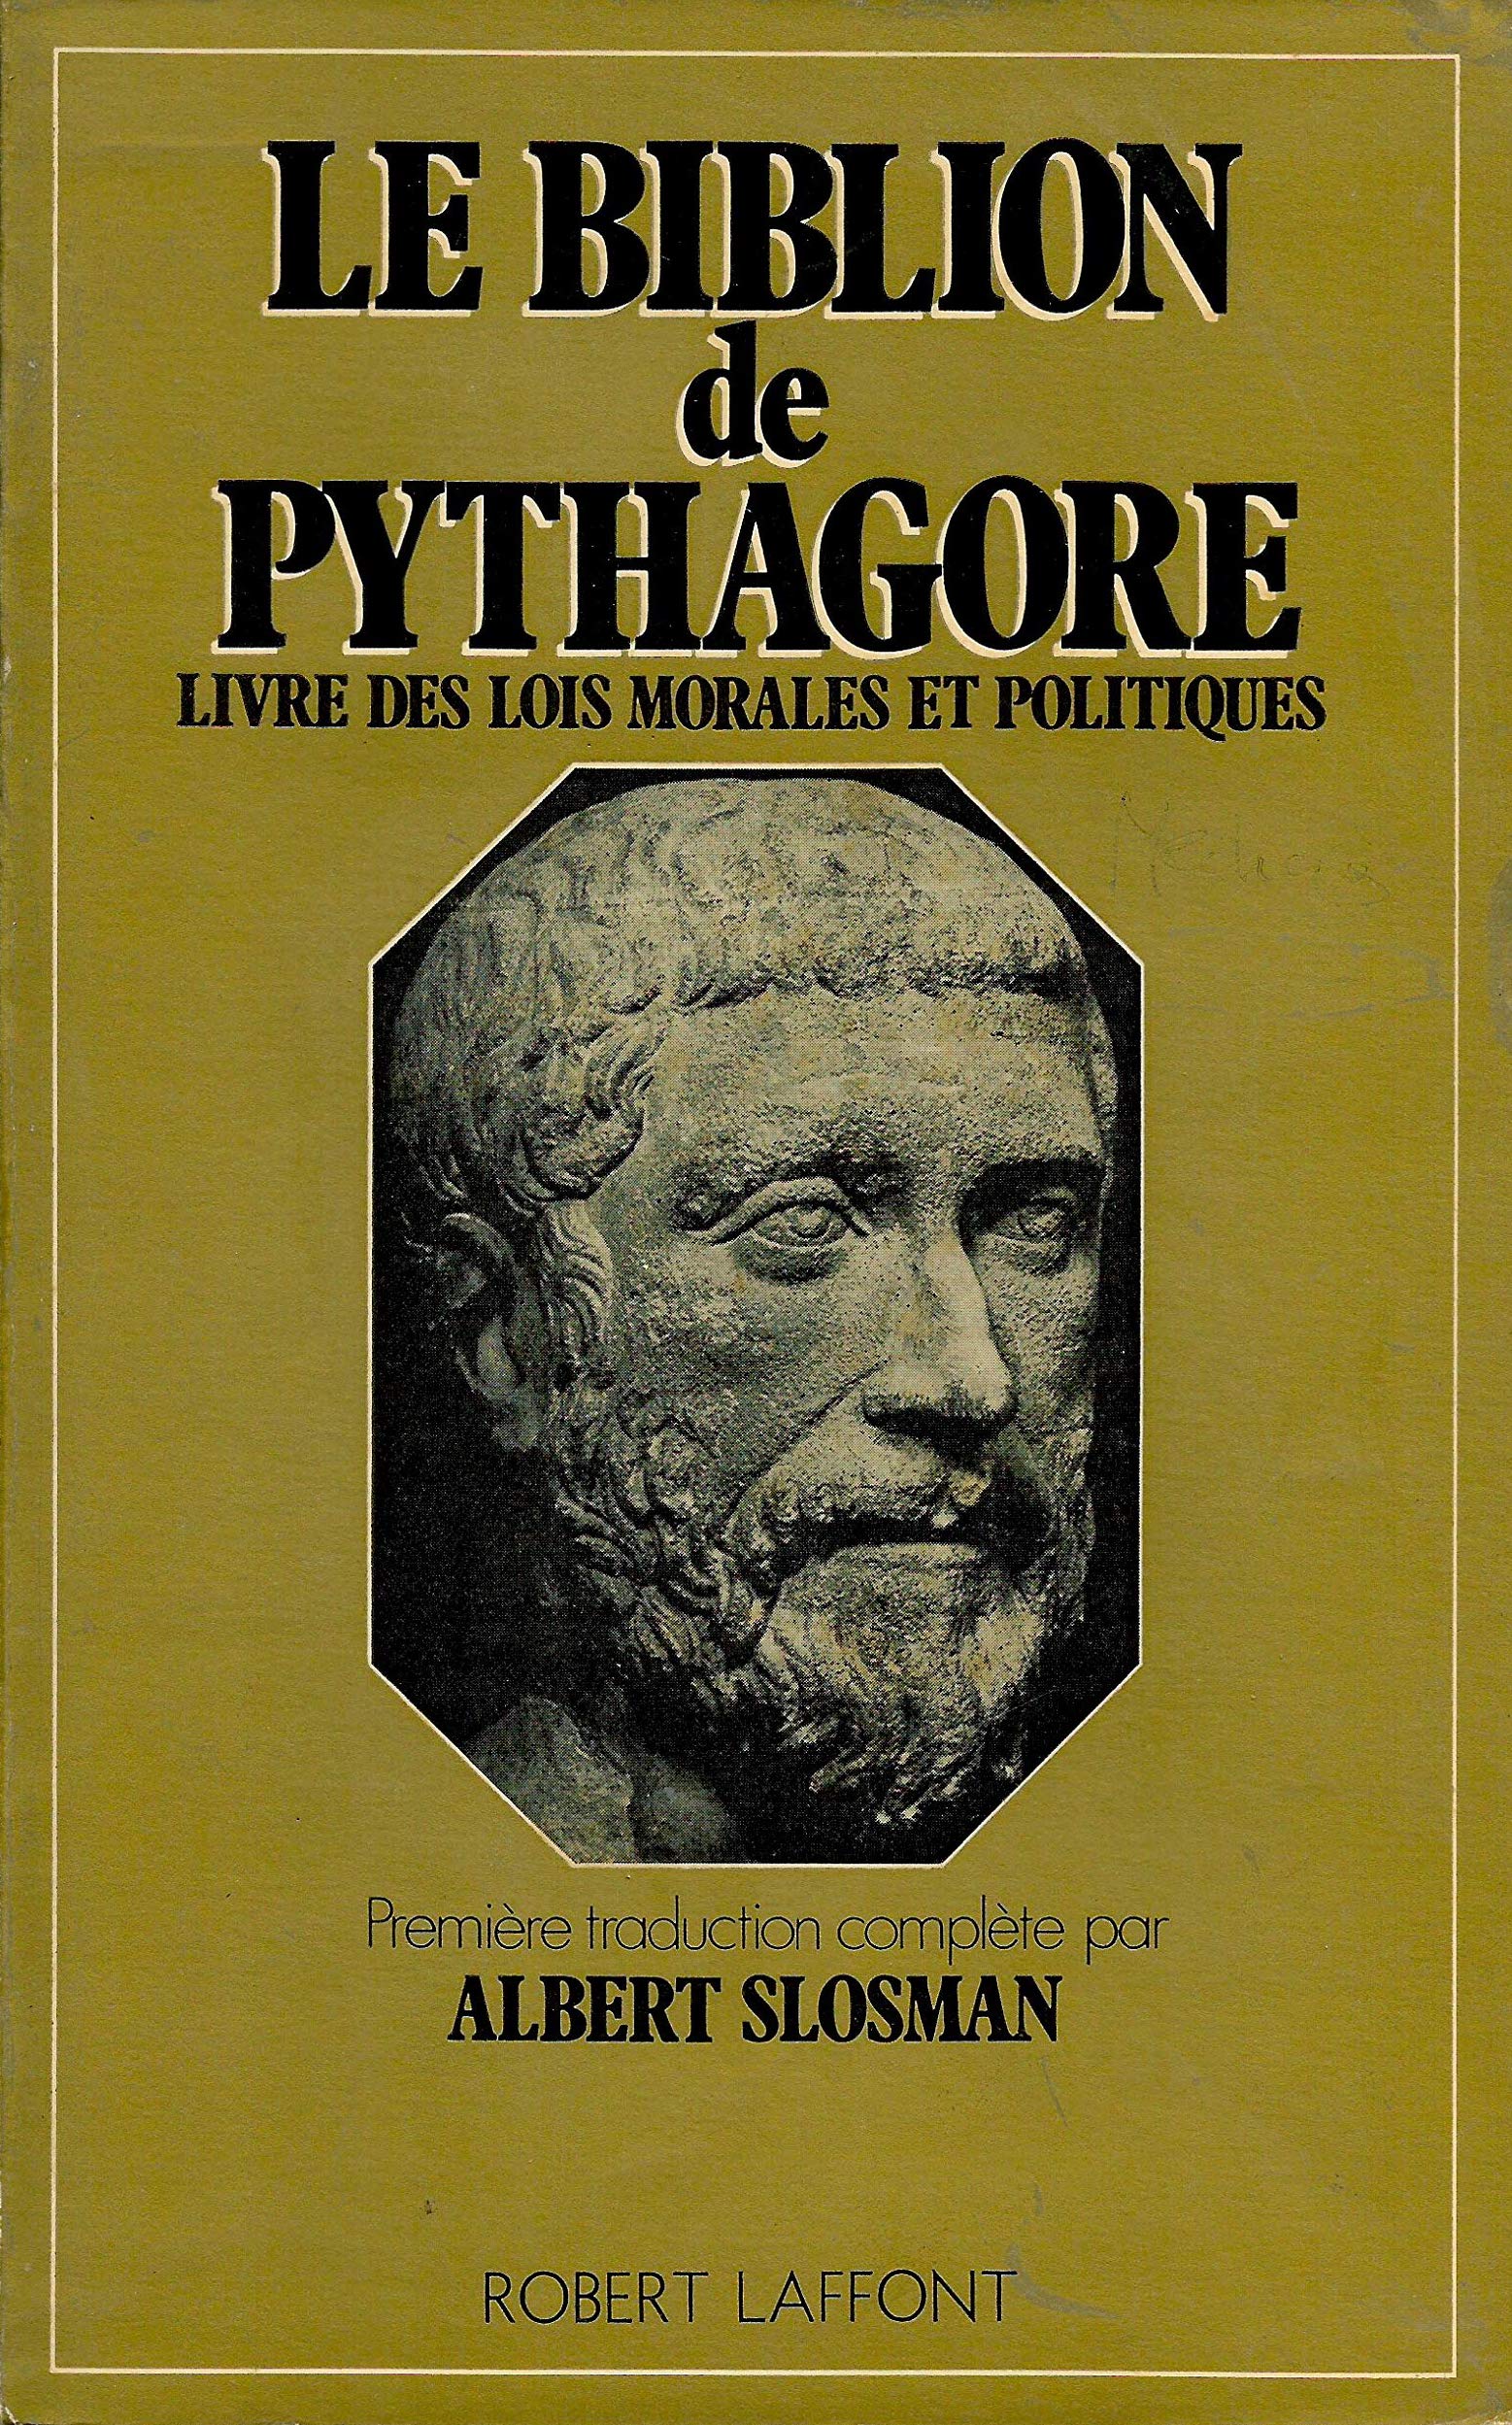 Le Biblion de Pythagore. Livre des lois morales et politiques